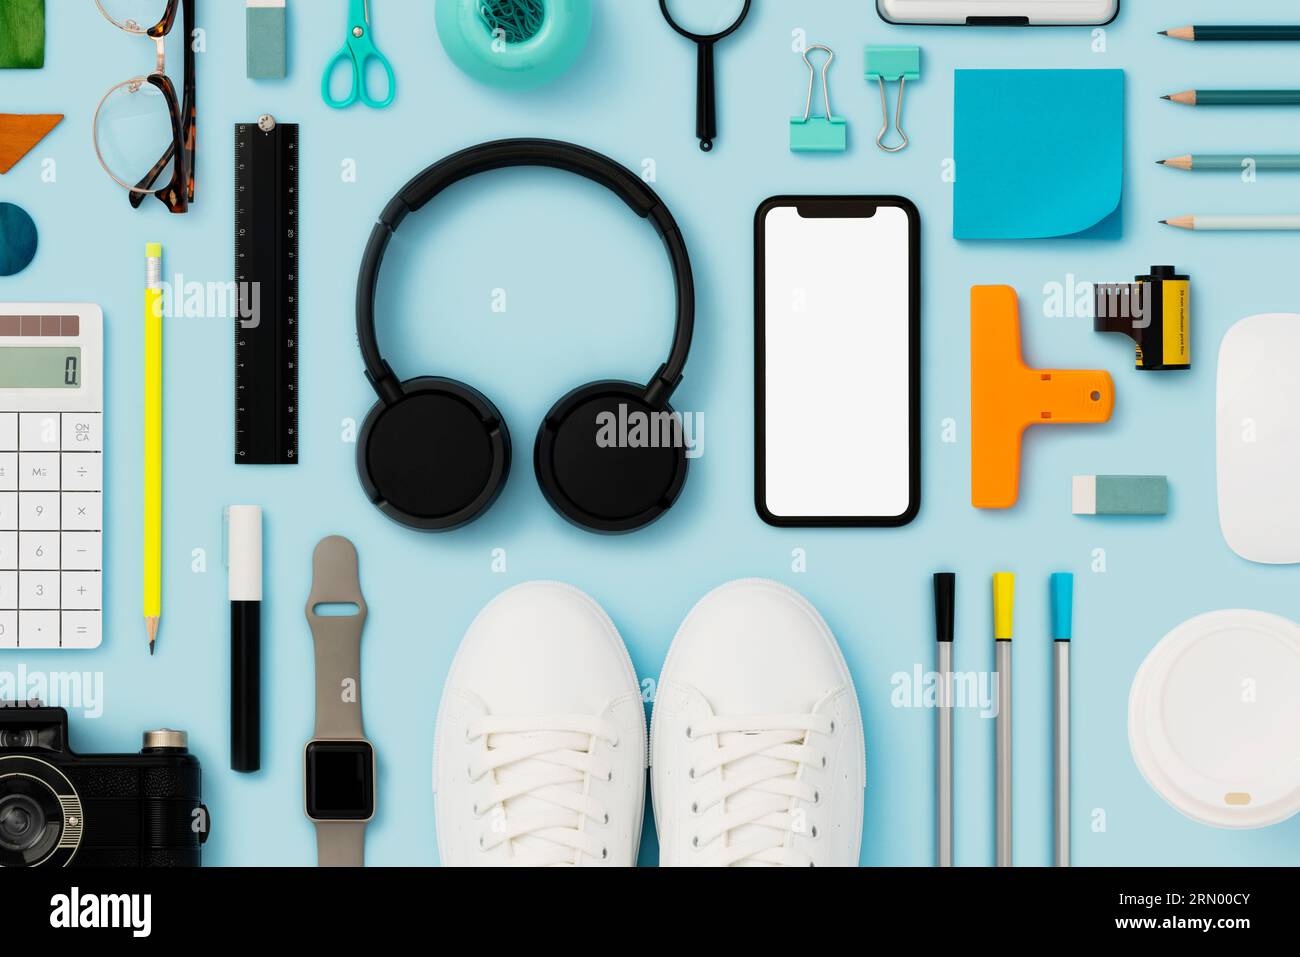 Retour à l'école plat avec maquette de téléphone intelligent sur fond bleu. Accessoires personnels et objets du quotidien à plat Banque D'Images